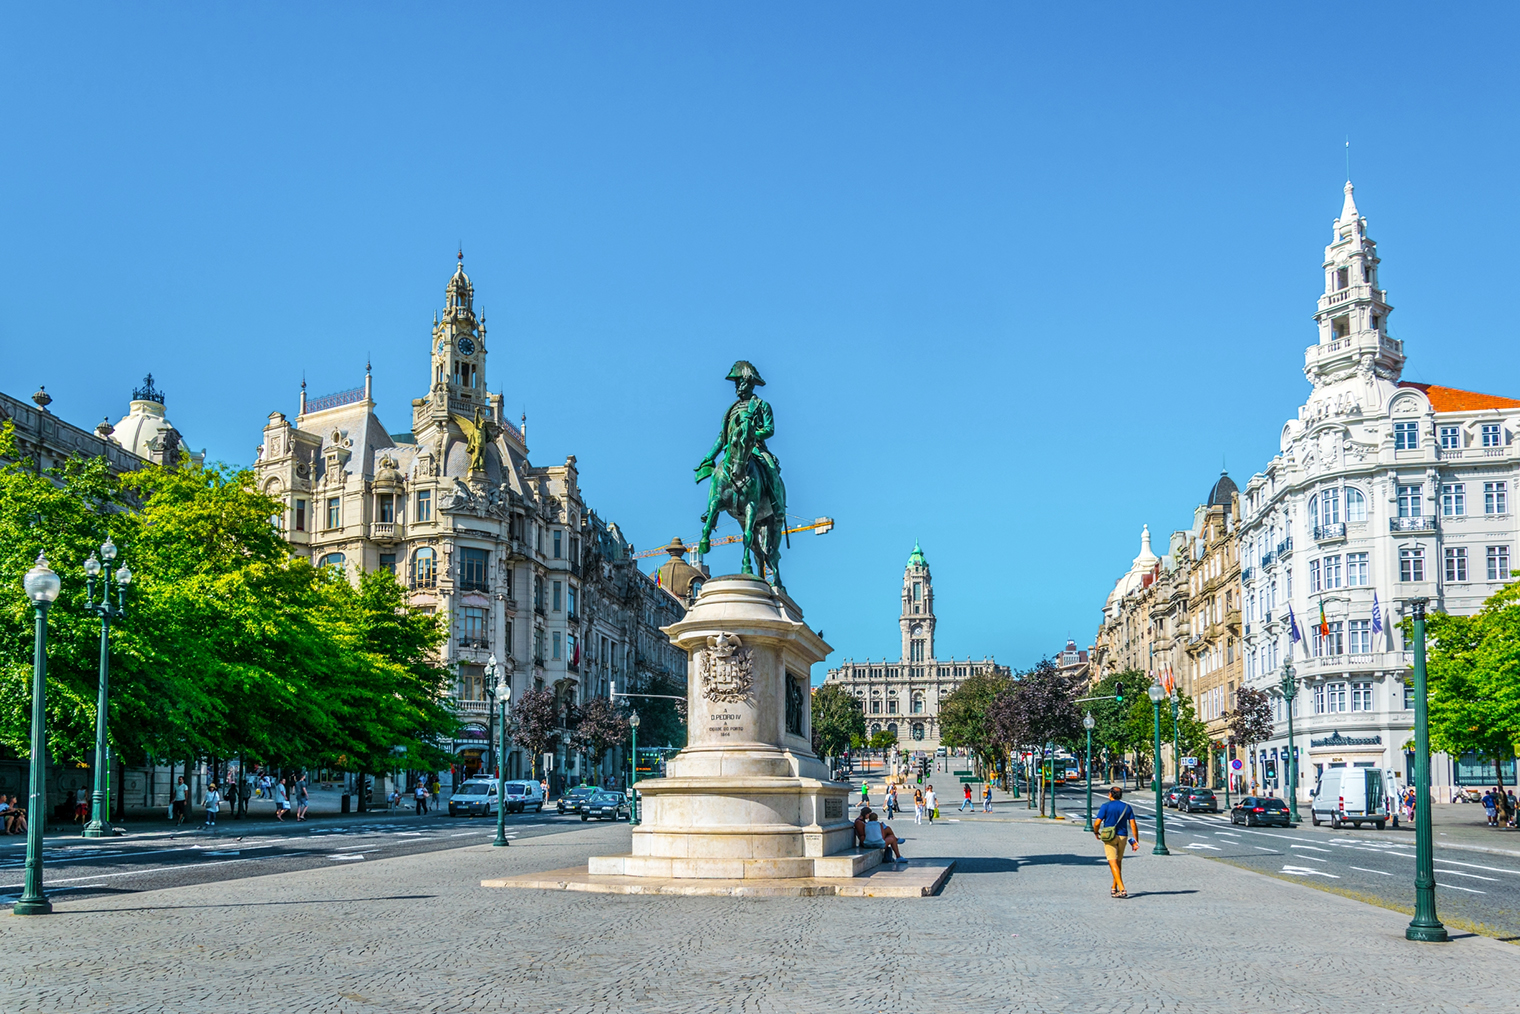 Памятник Педро IV на фоне ратуши. Фотография: trabantos / Shutterstock